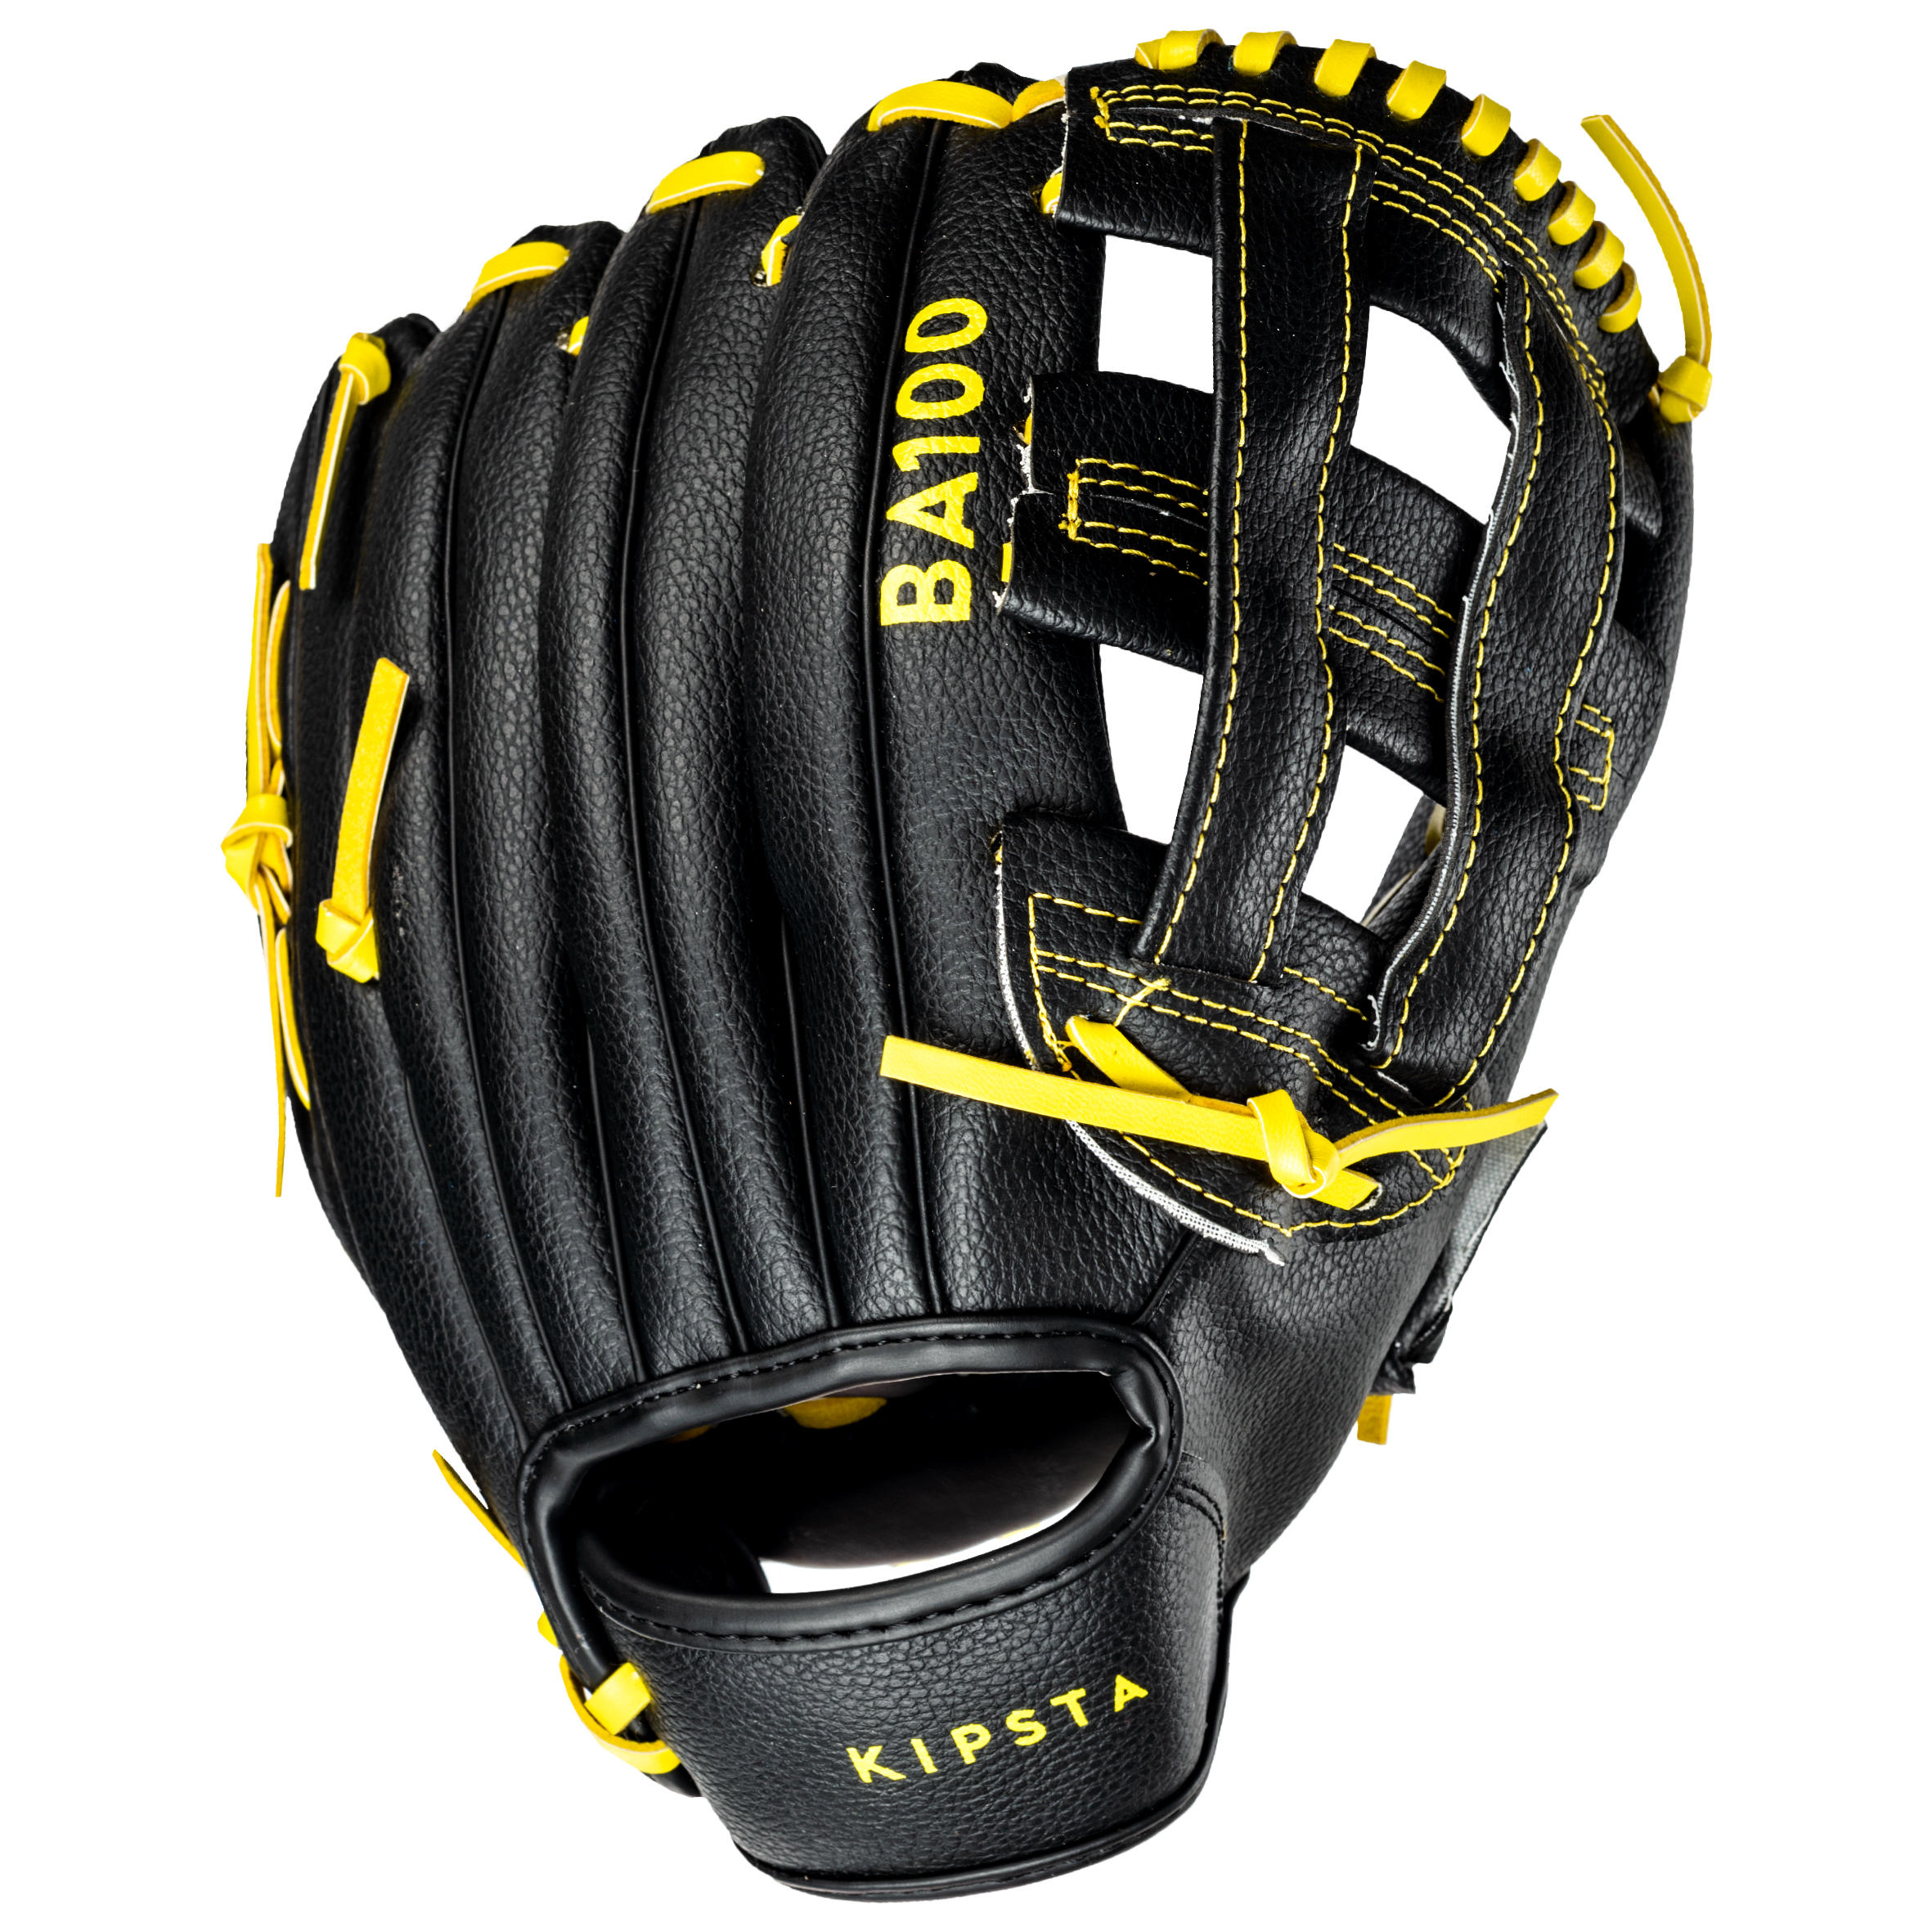 Gant de baseball droitier - BA 100 noir/jaune - KIPSTA